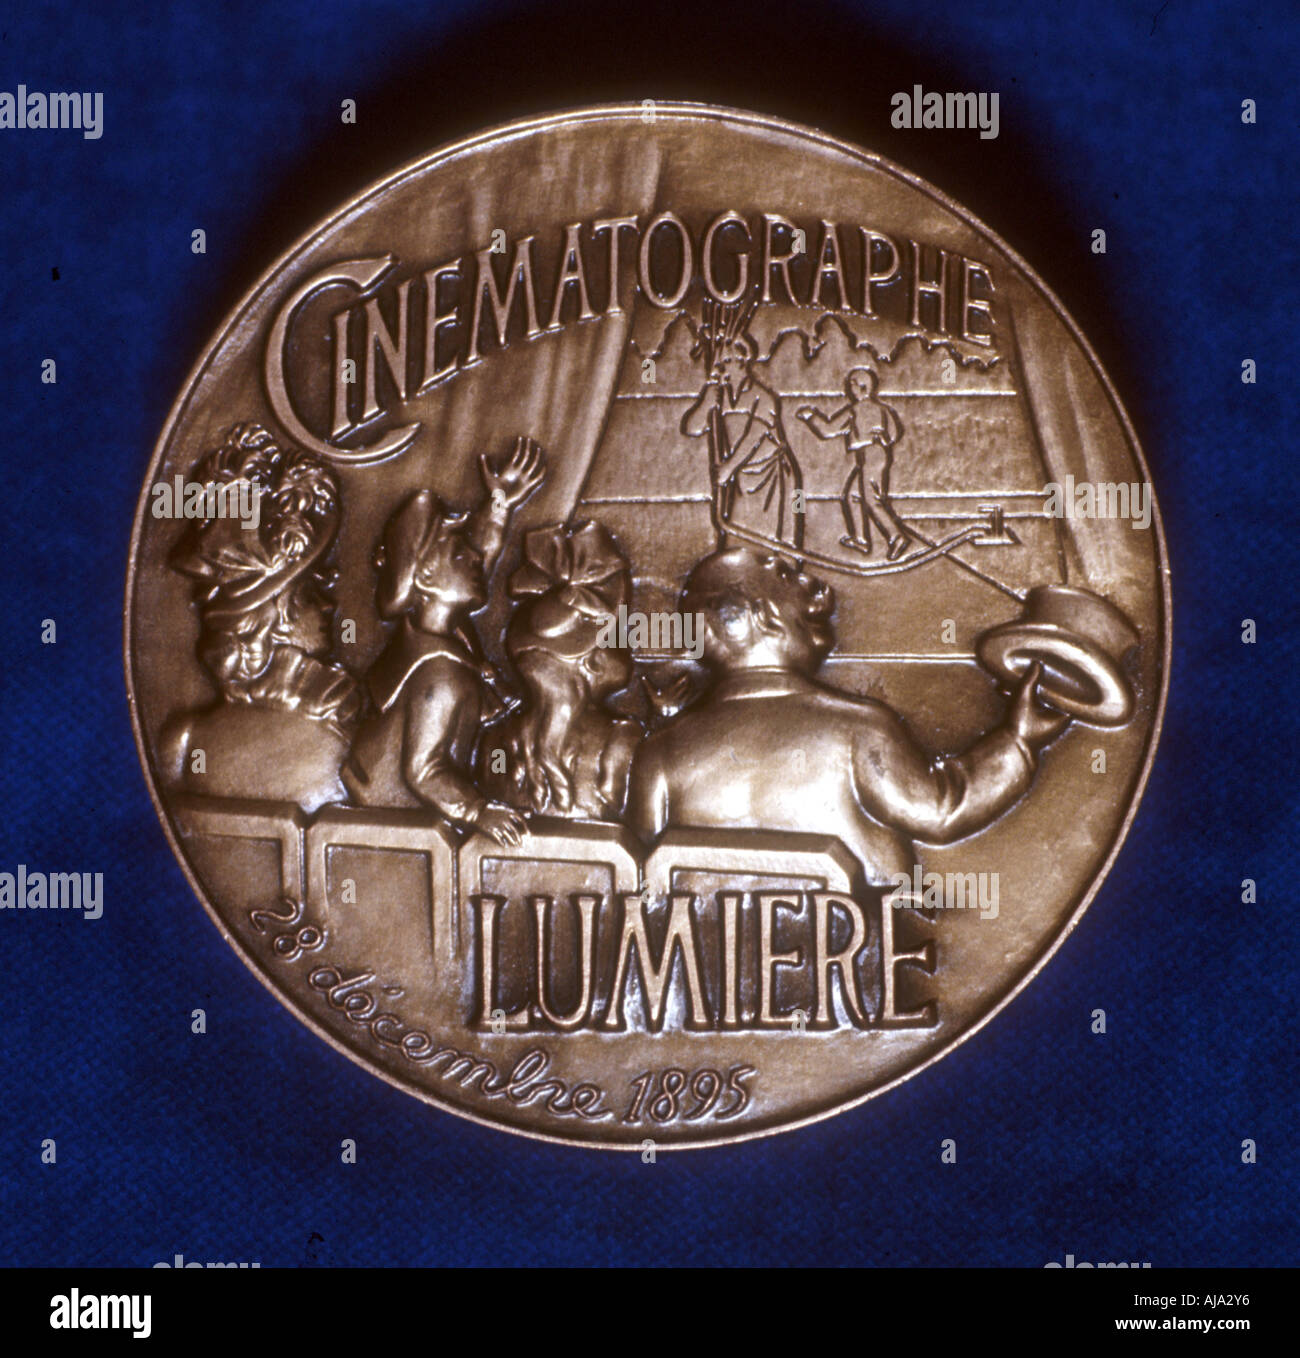 Rückseite der Medaille zum Gedenken an 50 Jahre Kinematographie von der Lumiere Brothers, 1945. Artist: Unbekannt Stockfoto